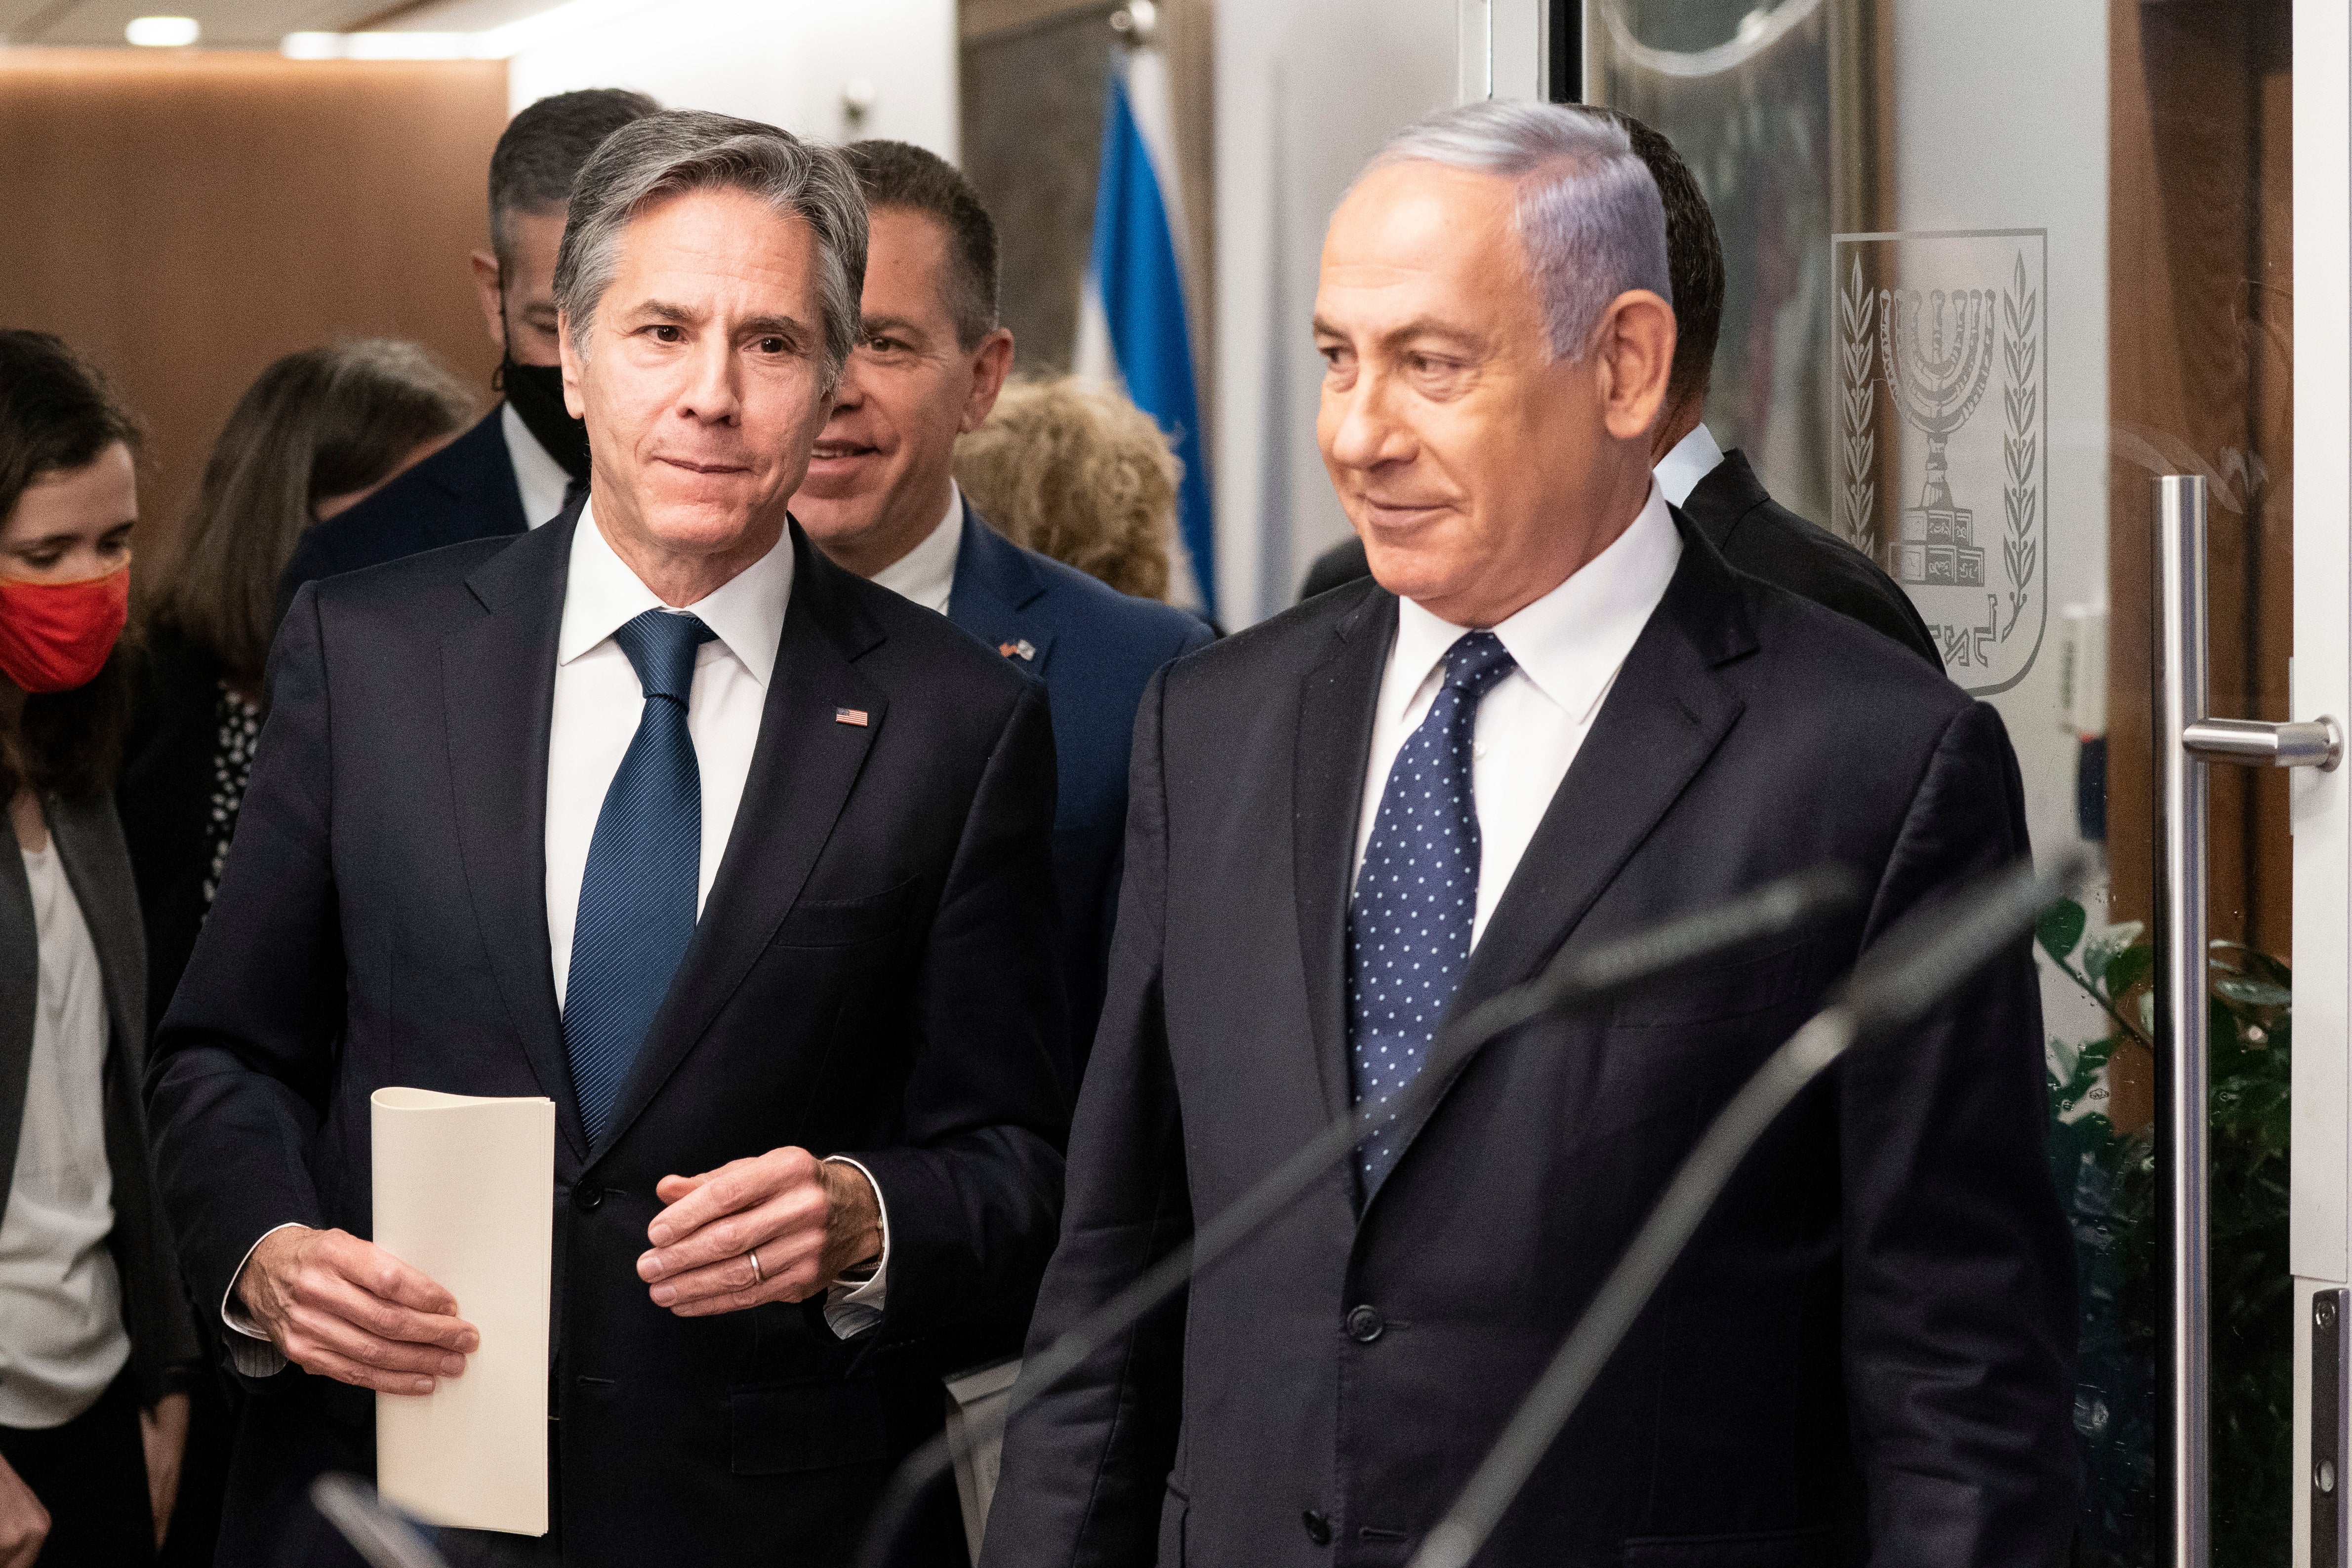 US secretary of state Antony Blinken speaks with Israeli prime minister Benjamin Netanyahu